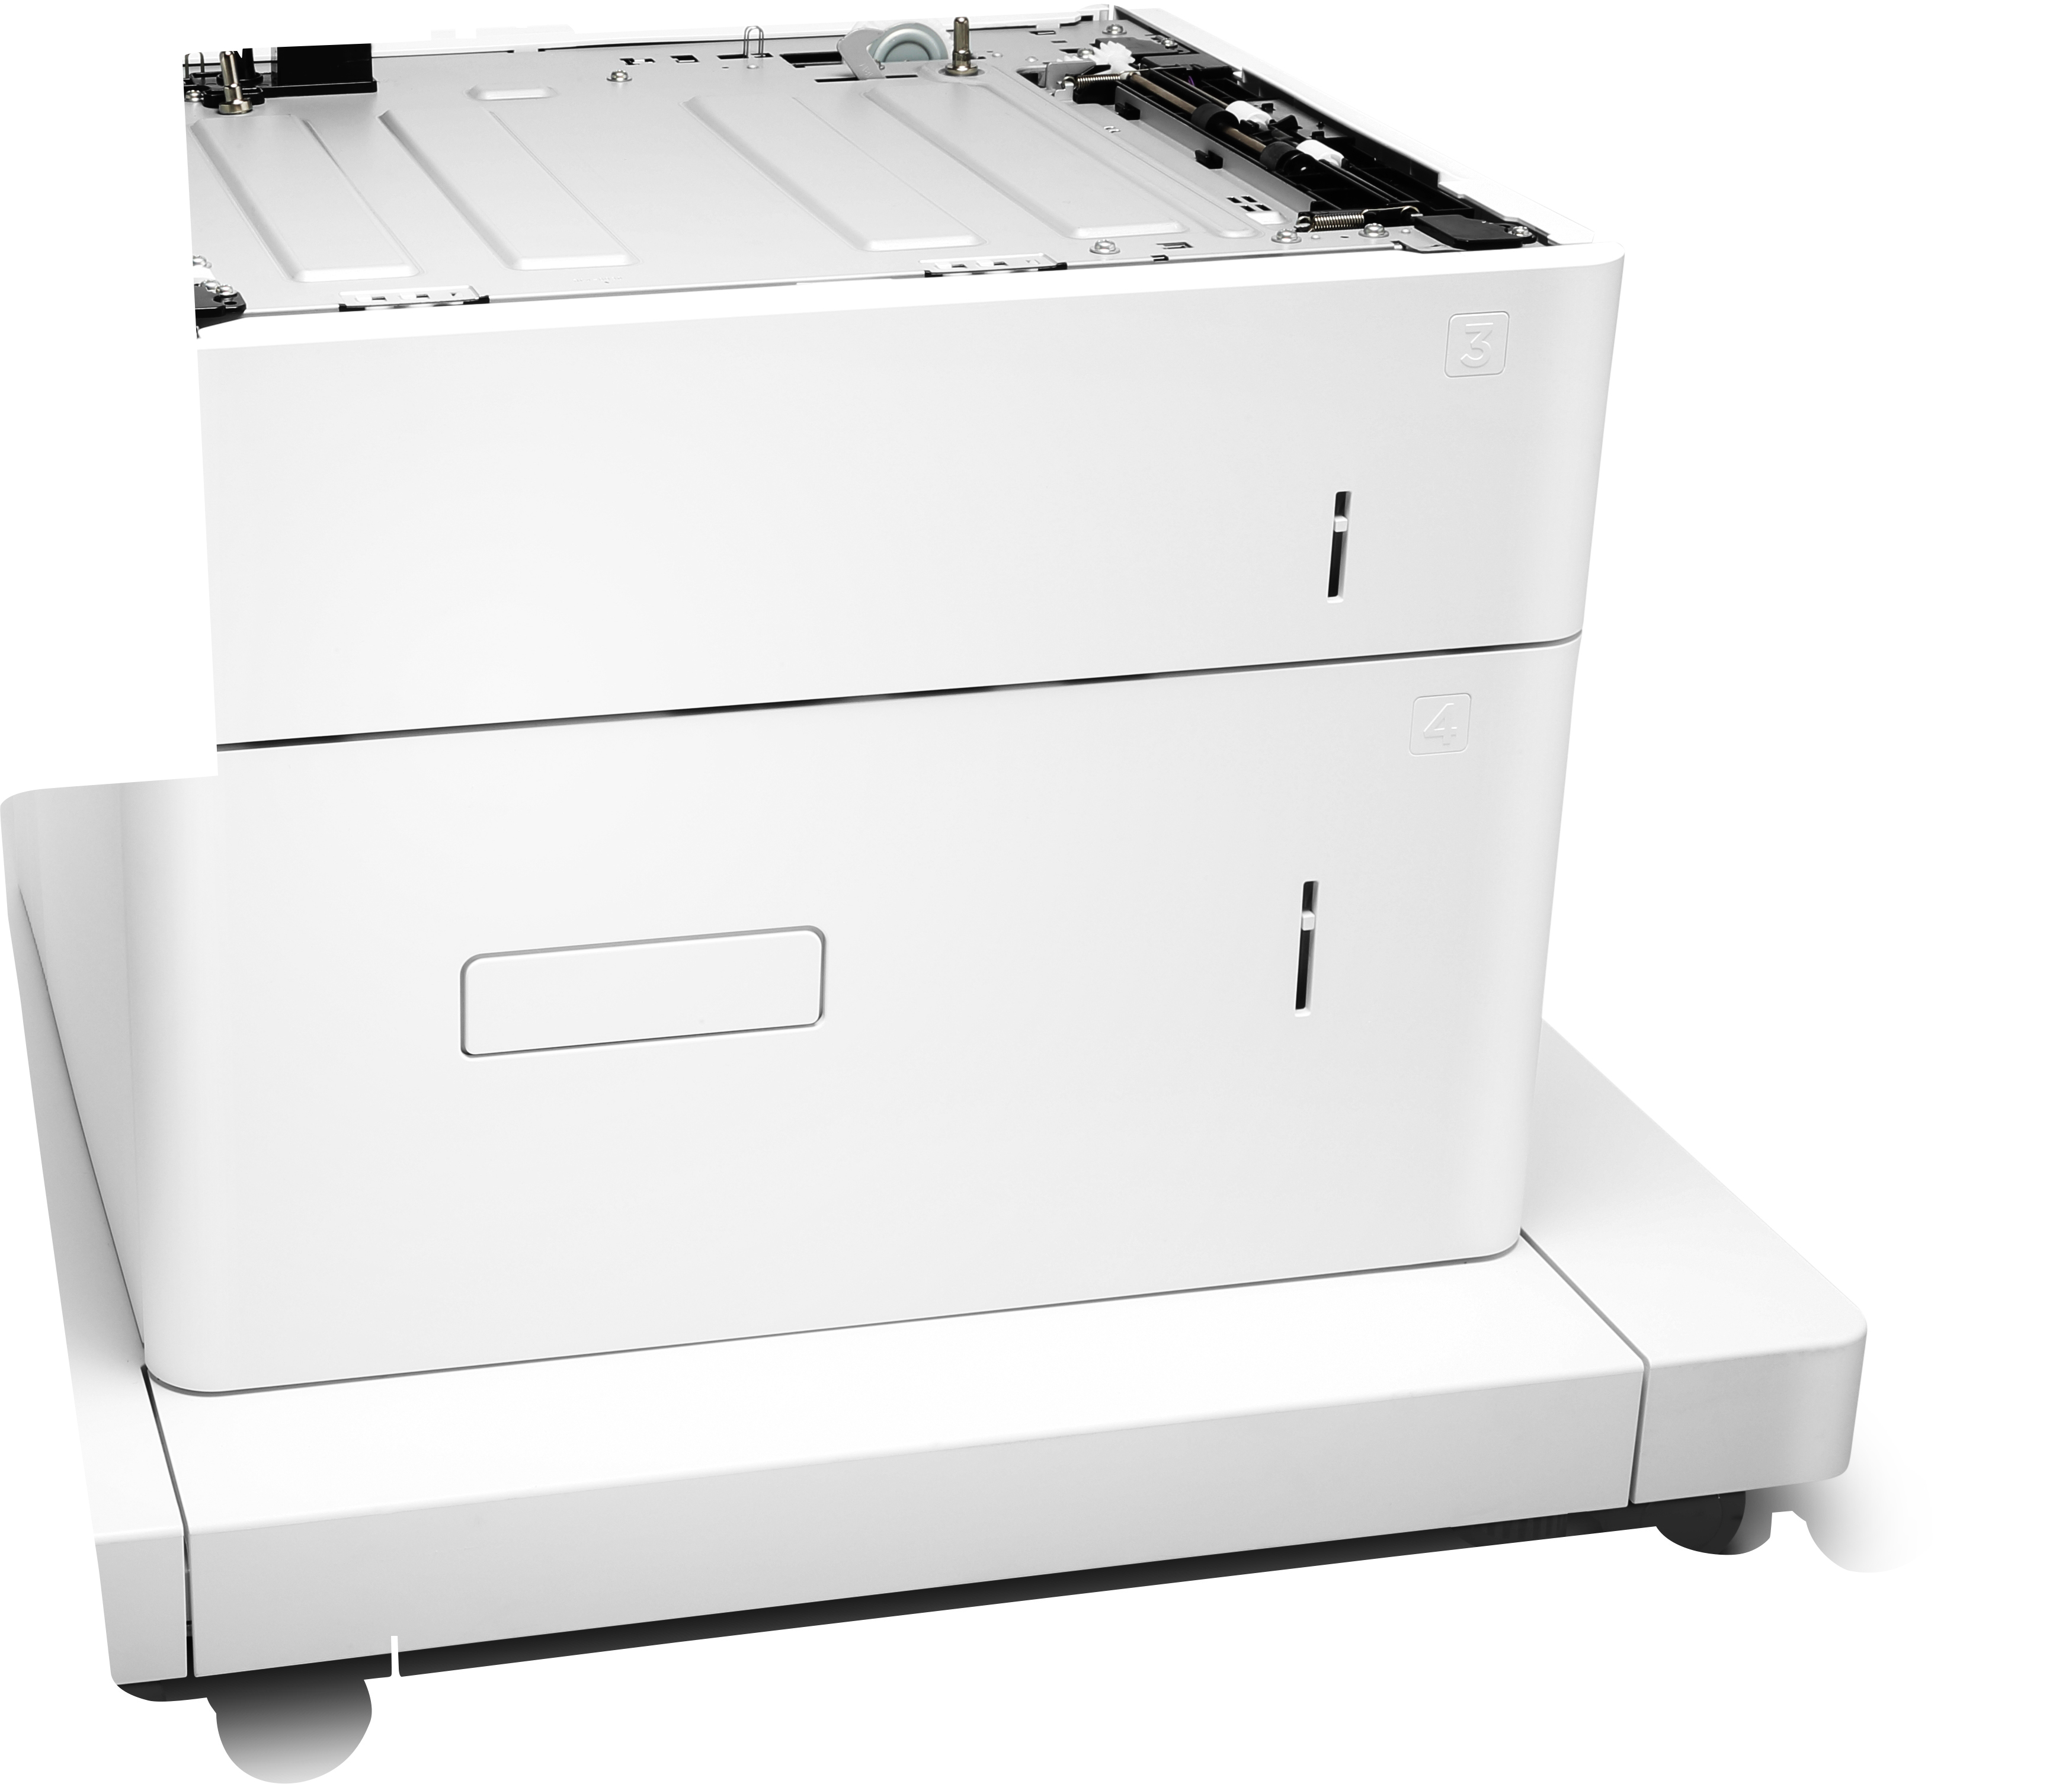 HP Papiereinzug und Ständer - Druckerbasis mit Medienzuführung - 2550 Blätter in 2 Schubladen (Trays)